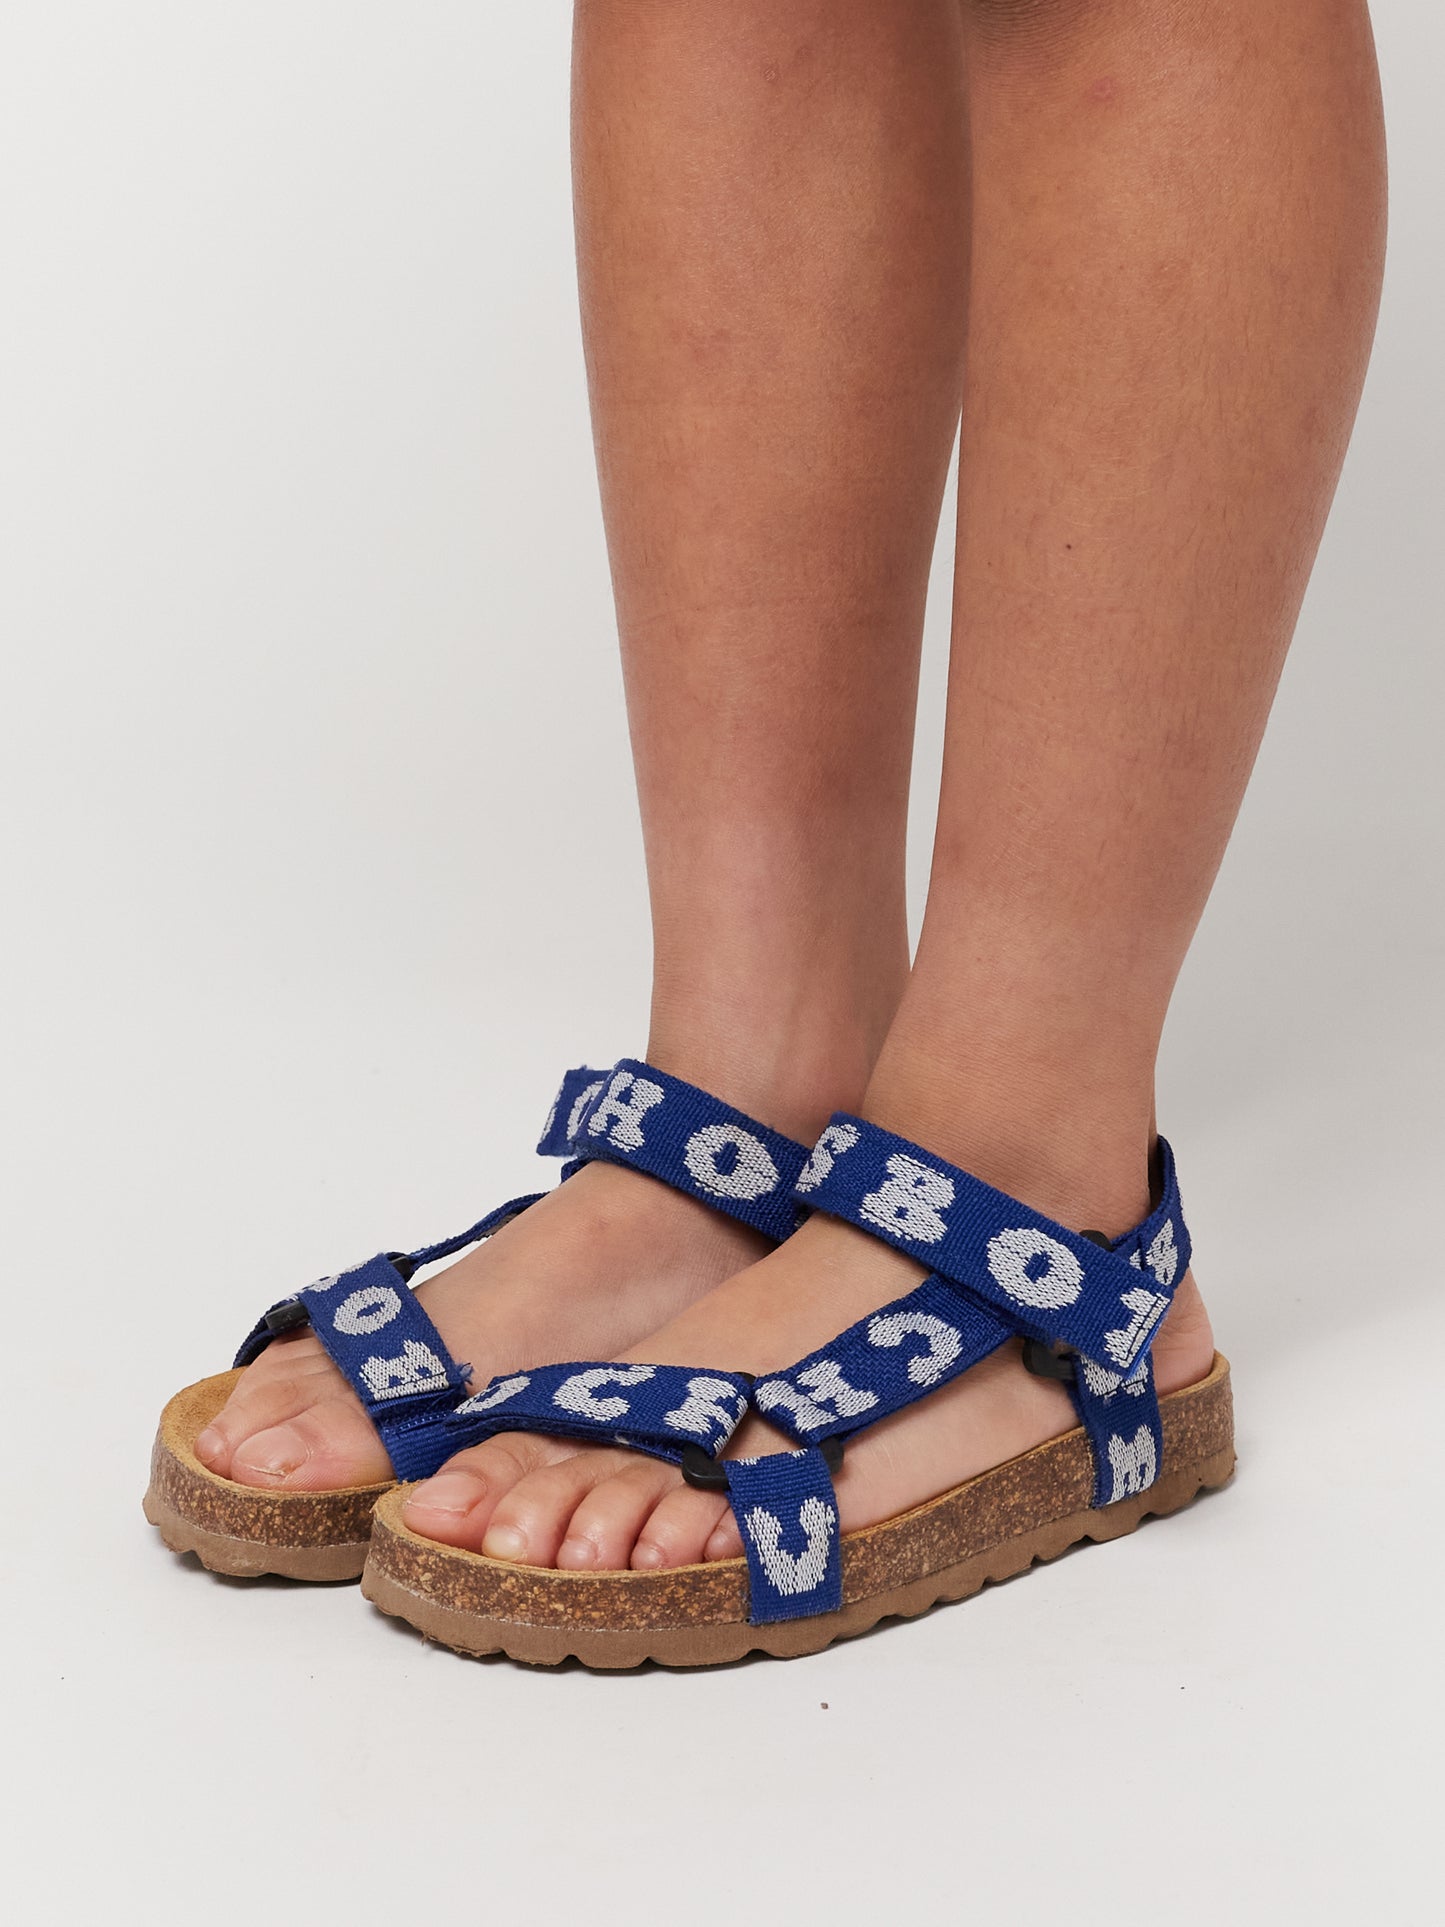 Sandales bleues imprimées de Bobo Choses